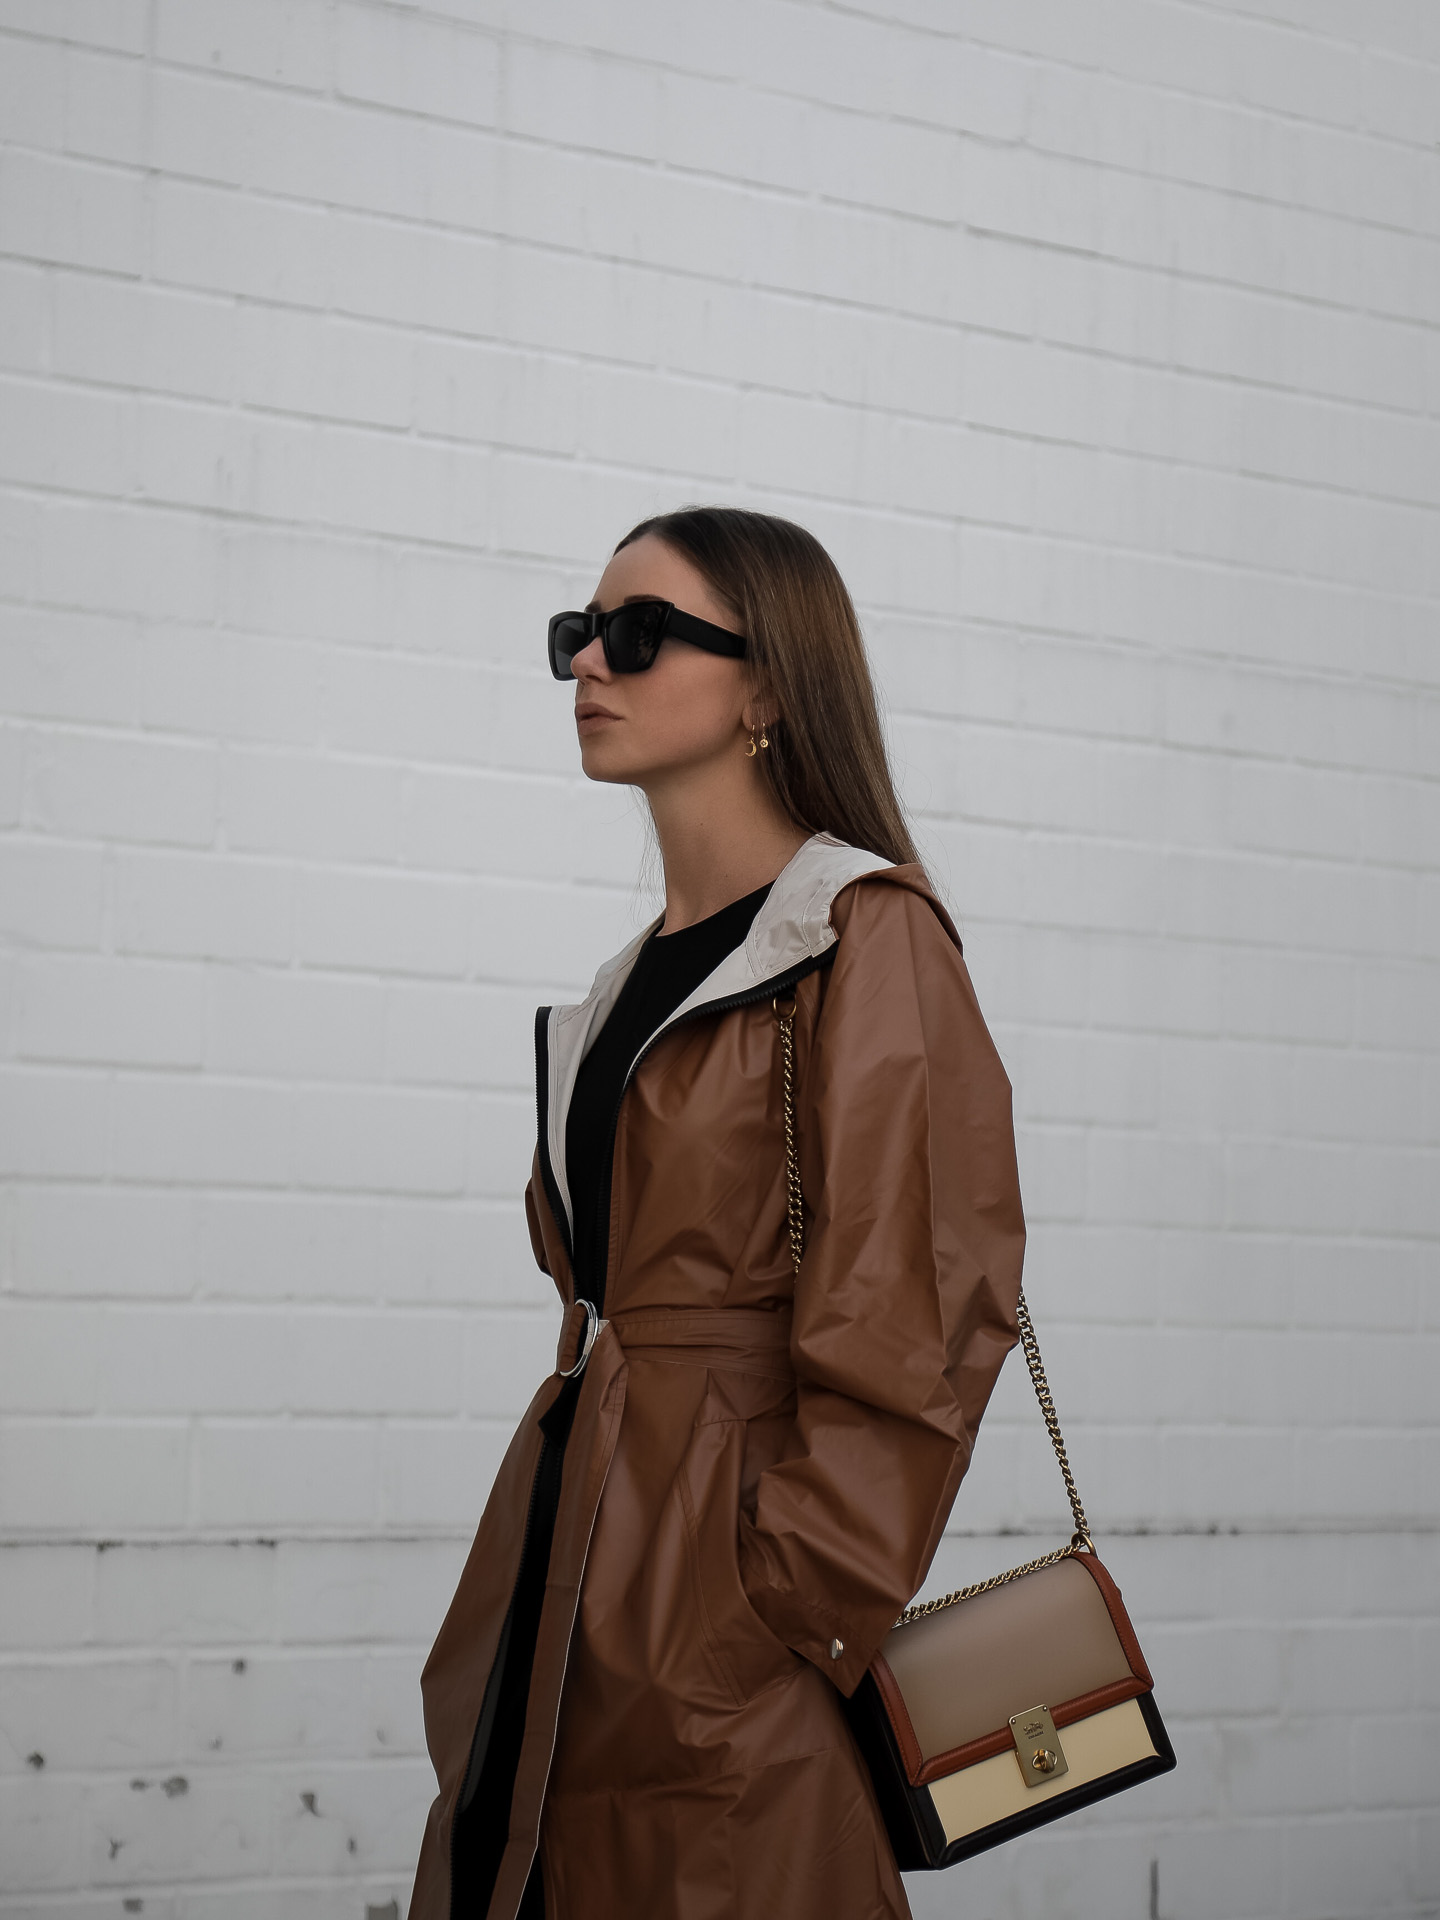 Zweireihiger Mantel von Sportmax - Jasmin Kessler, Modeblog